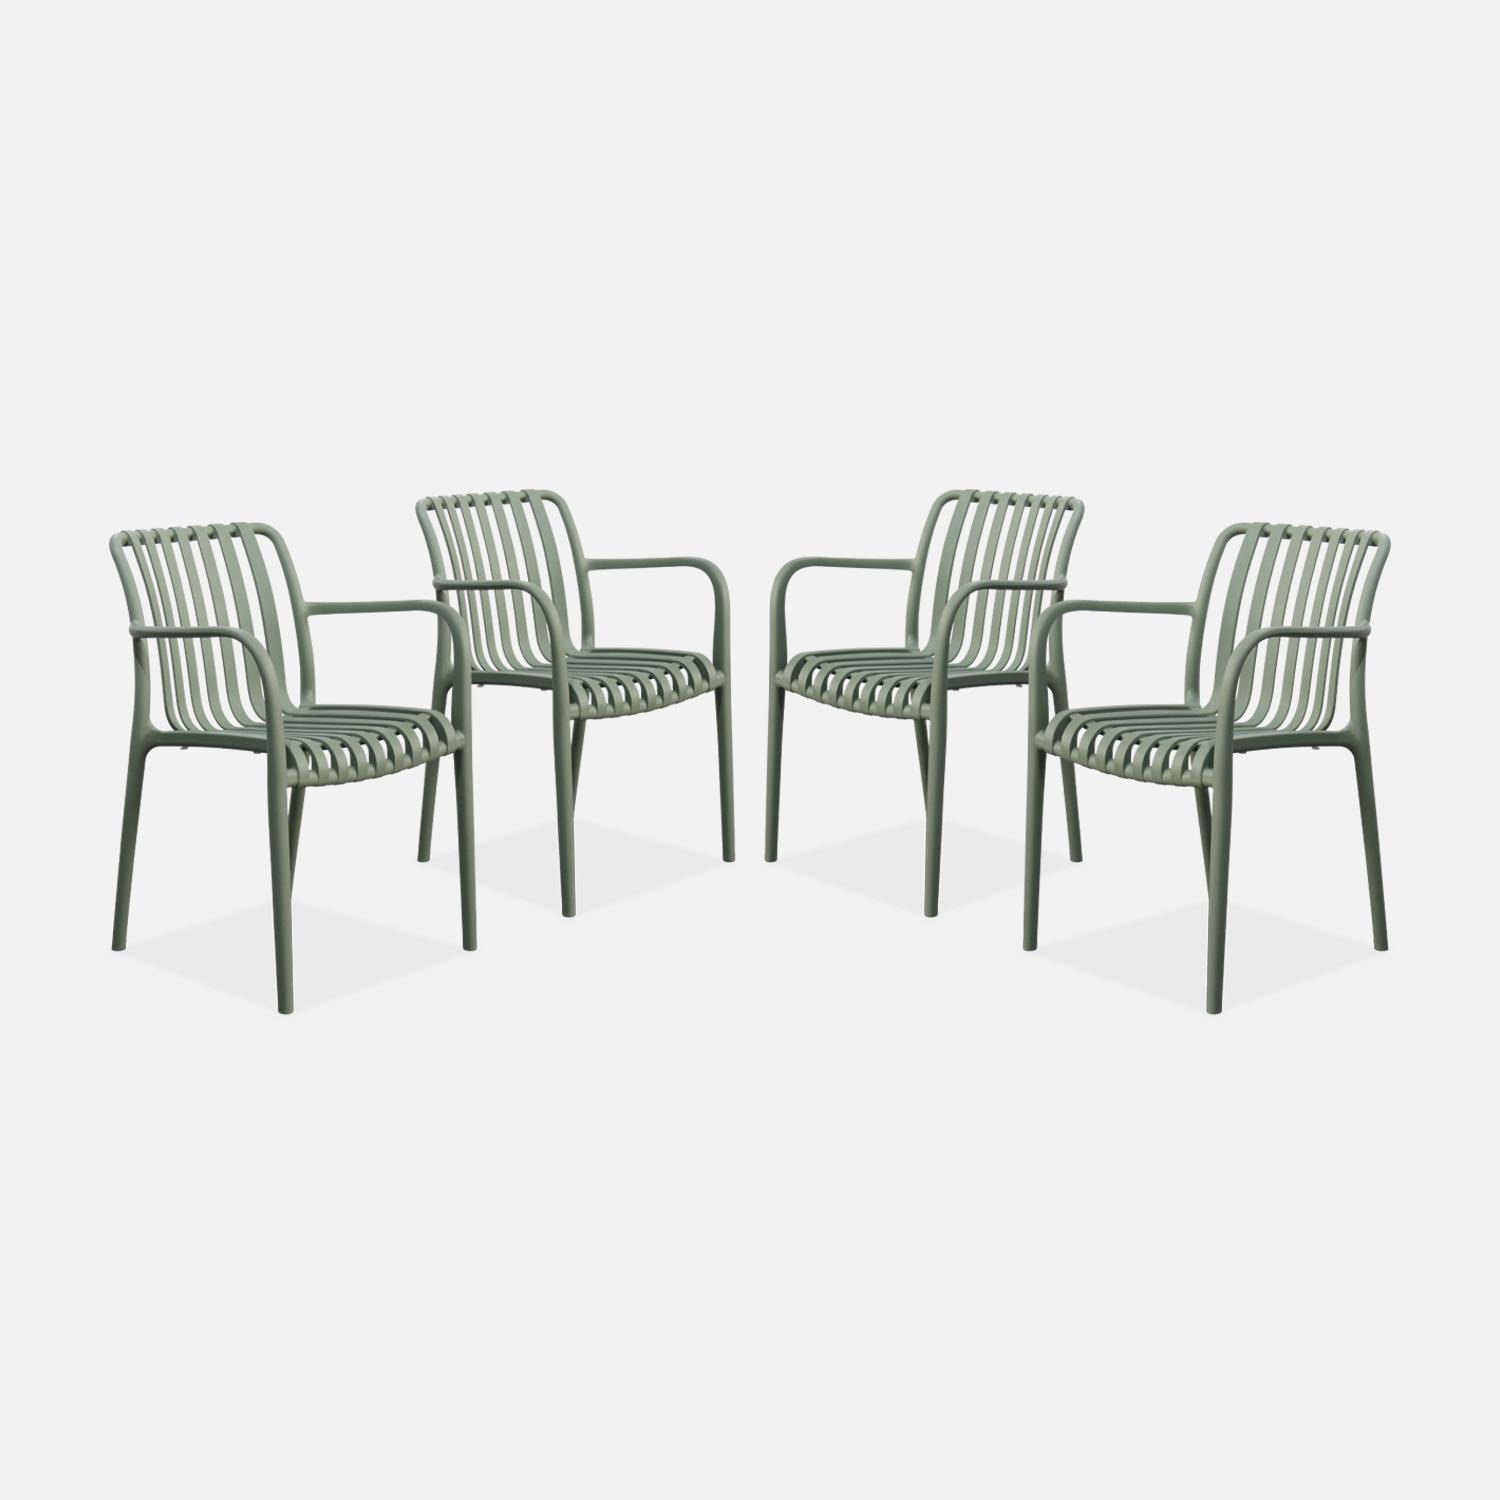 Lot de 4 fauteuils de jardin en plastique vert de gris, empilables, design linéaire ,sweeek,Photo1